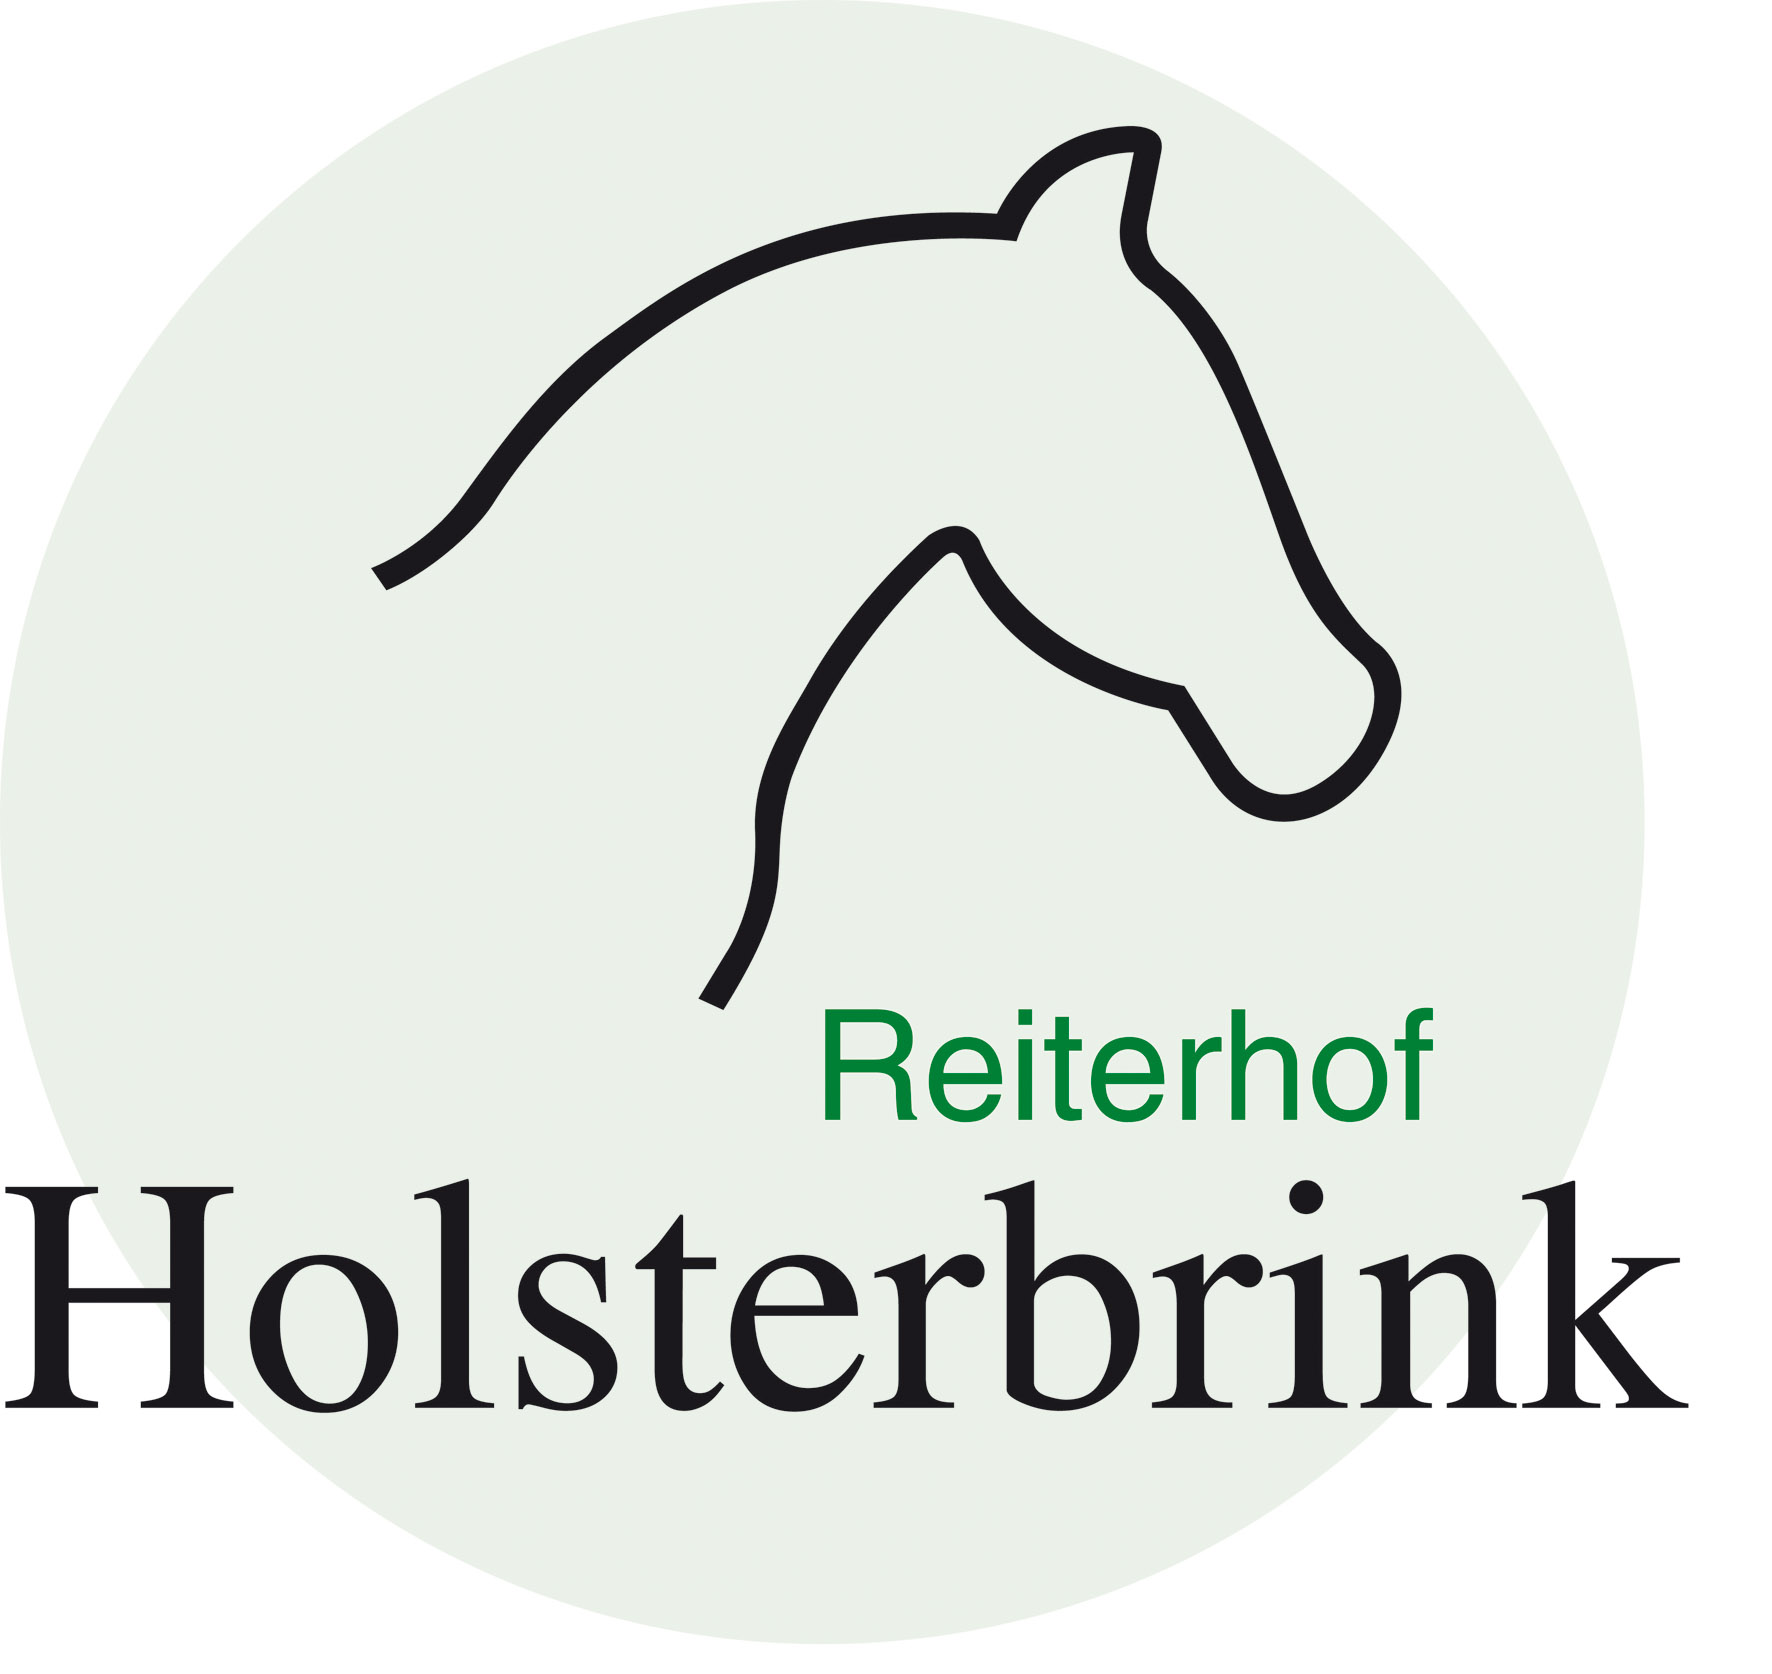 Reiterhof Holsterbrink